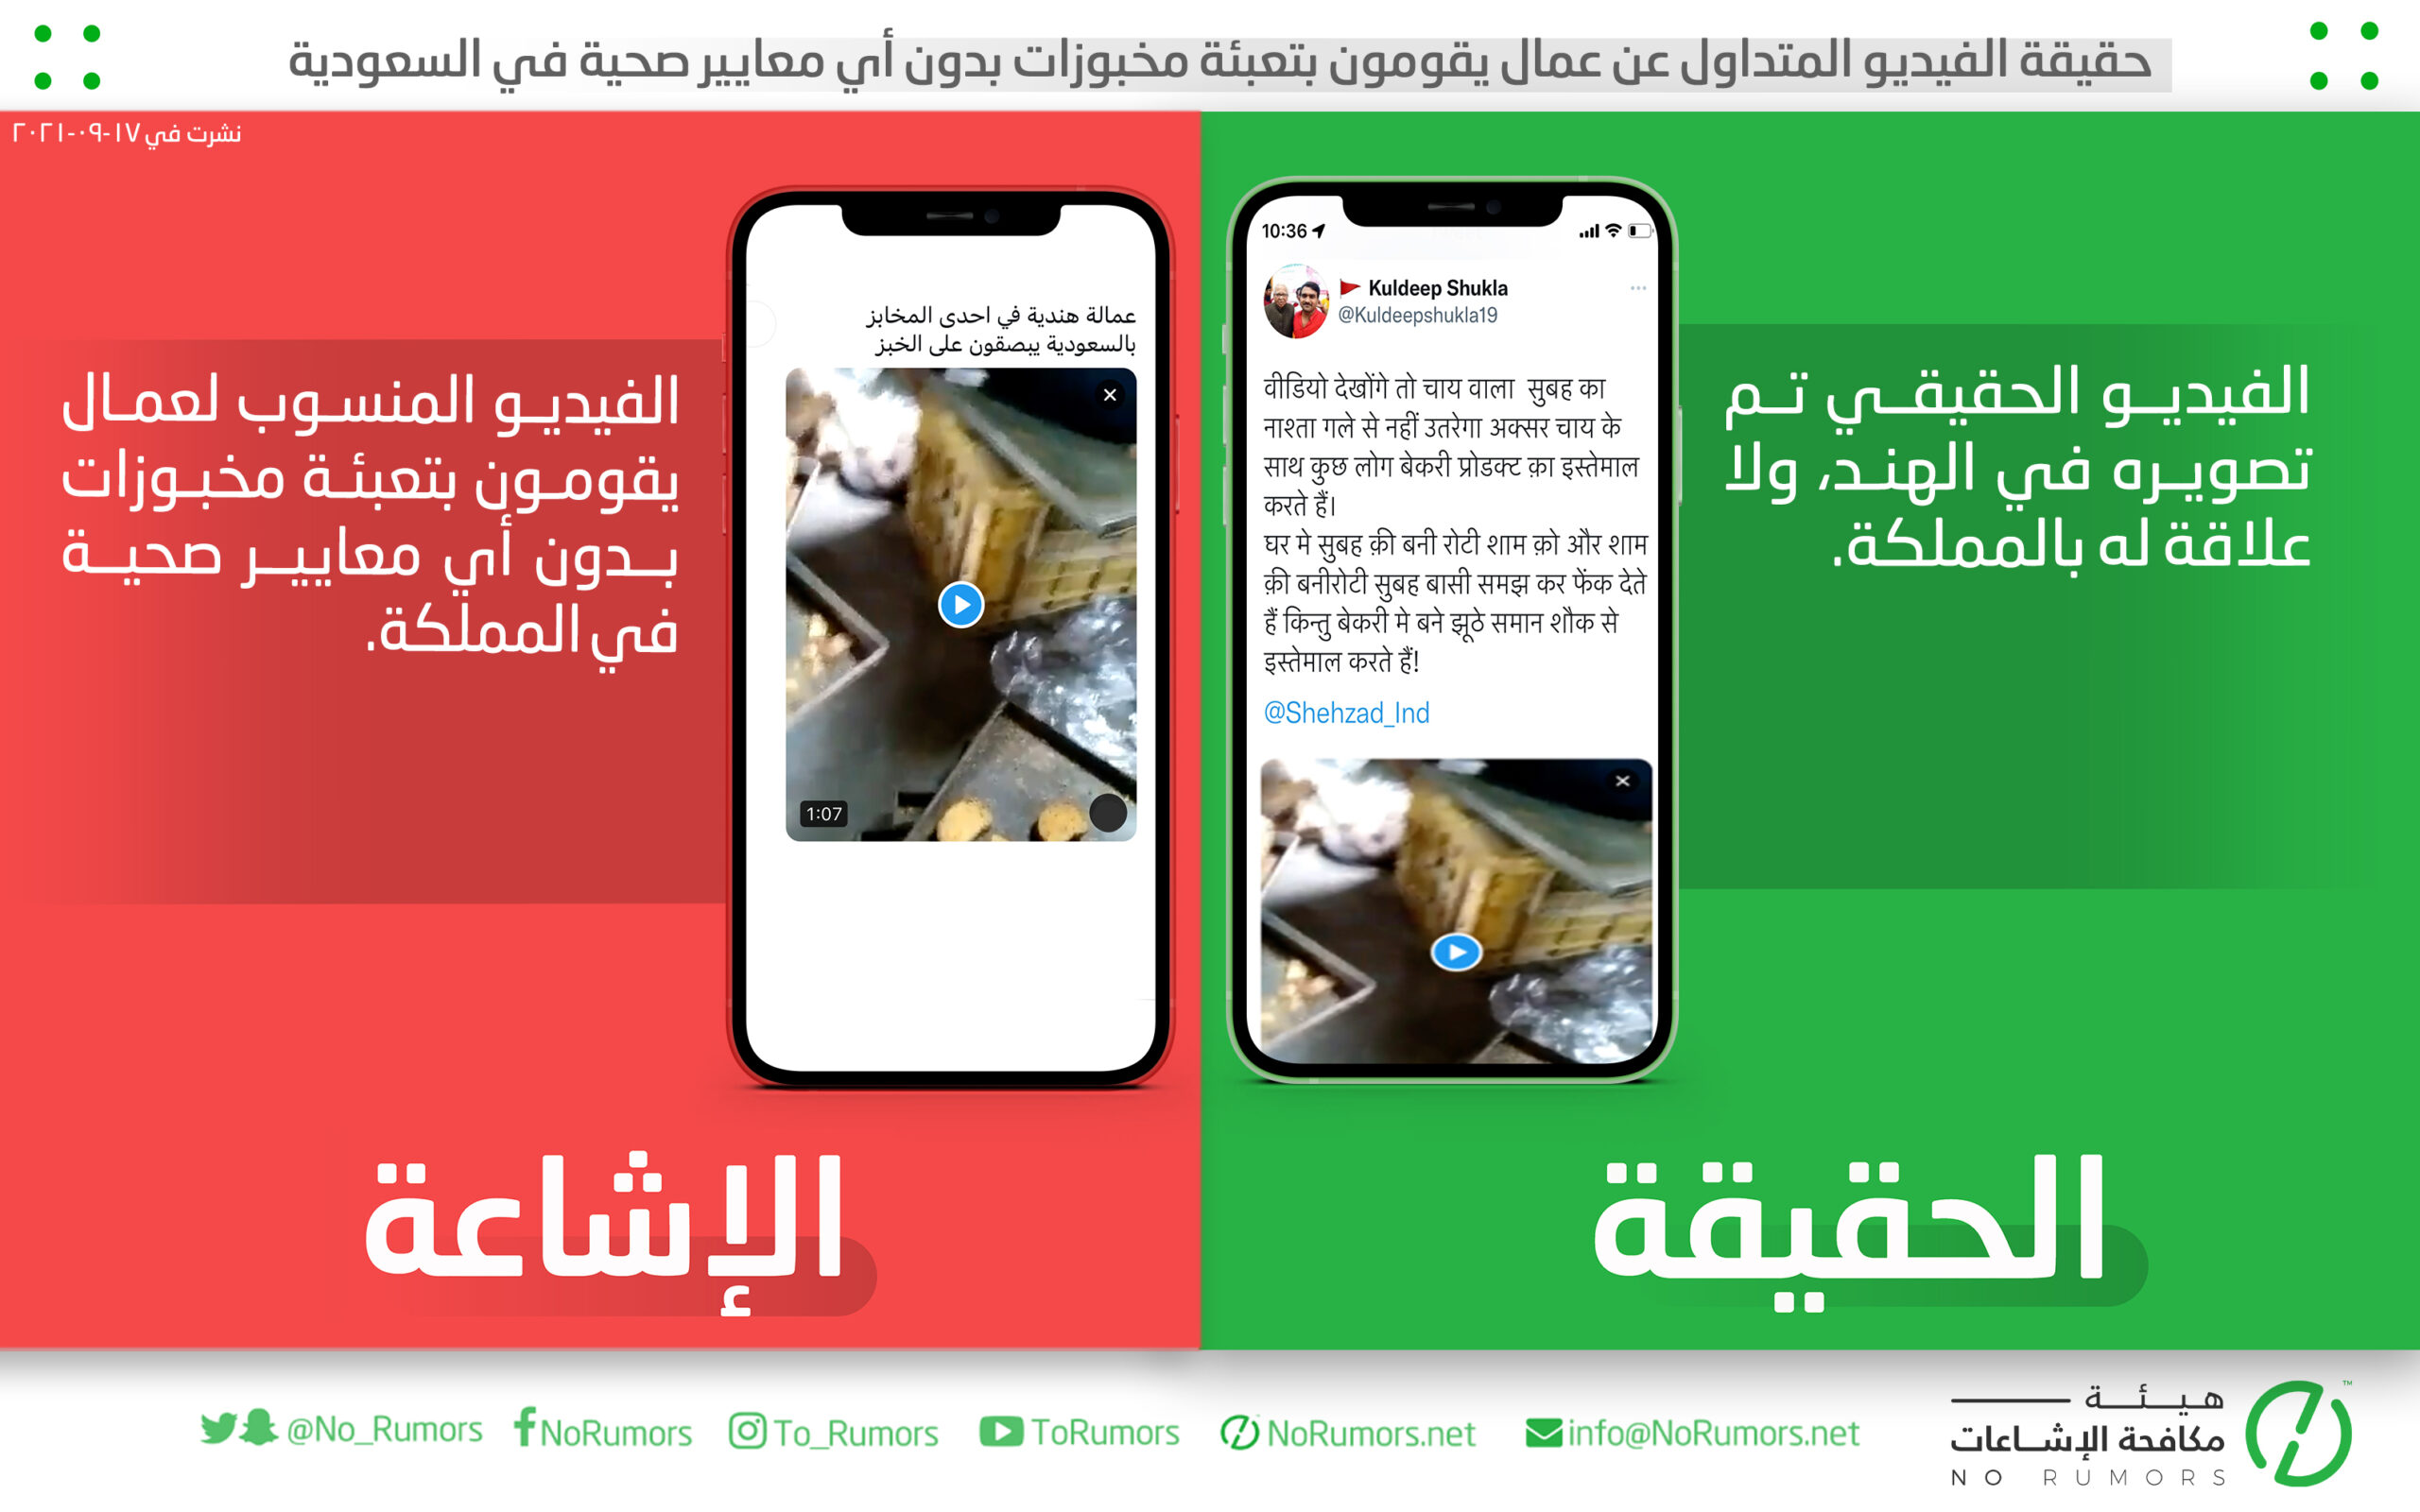 حقيقة الفيديو المتداول عن عمال يقومون بتعبئة مخبوزات بدون أي معايير صحية في السعودية